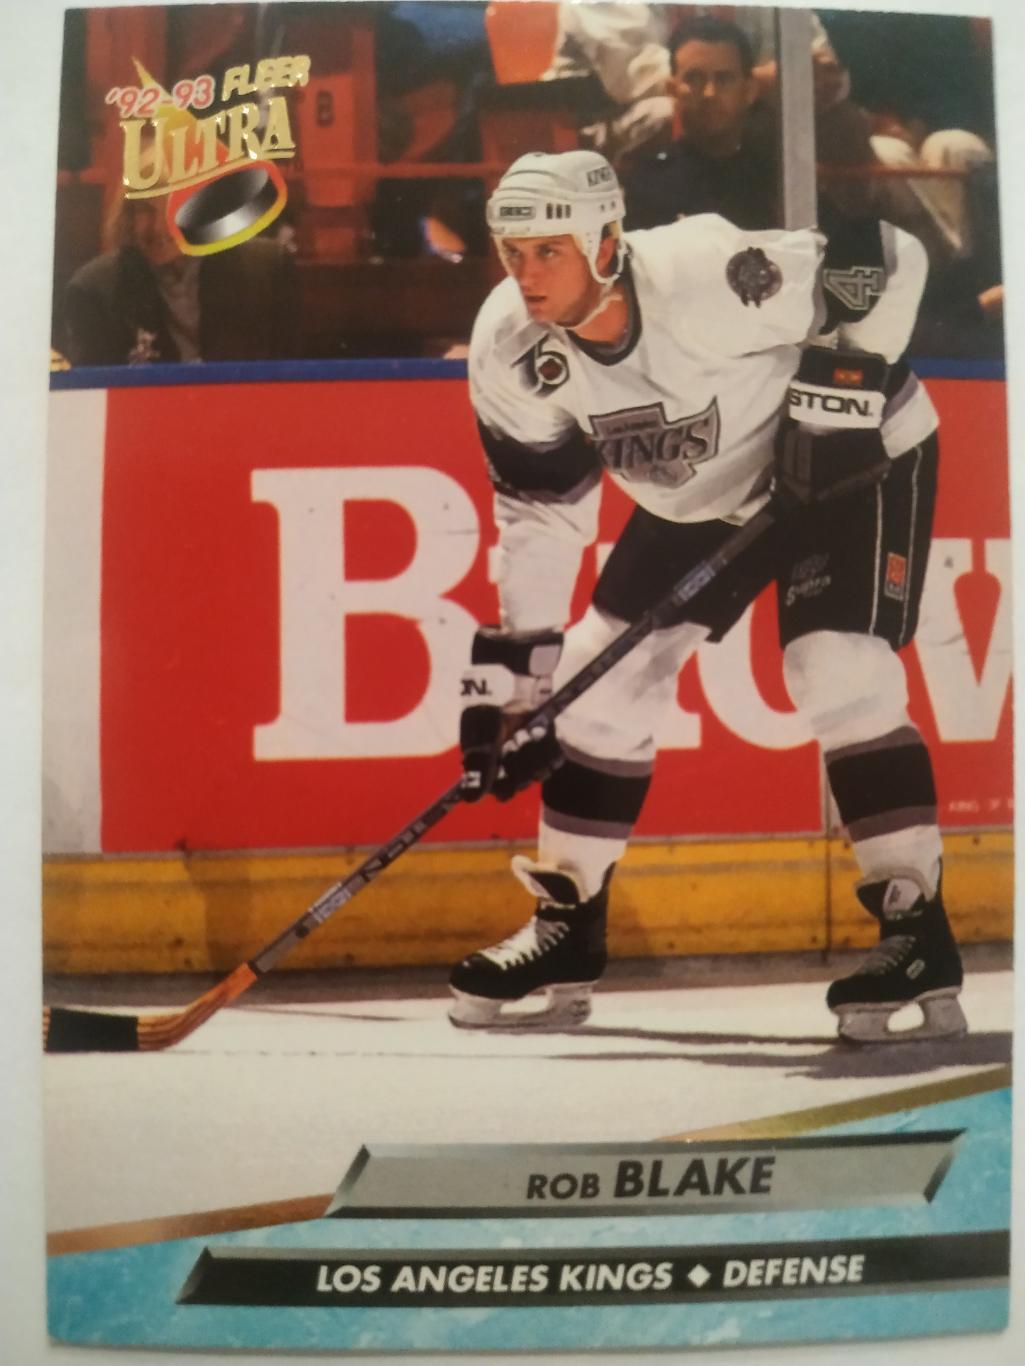 ХОККЕЙ КАРТОЧКА НХЛ FLEER ULTRA 1992-93 NHL ROB BLAKE LOS ANGELES KINGS #79